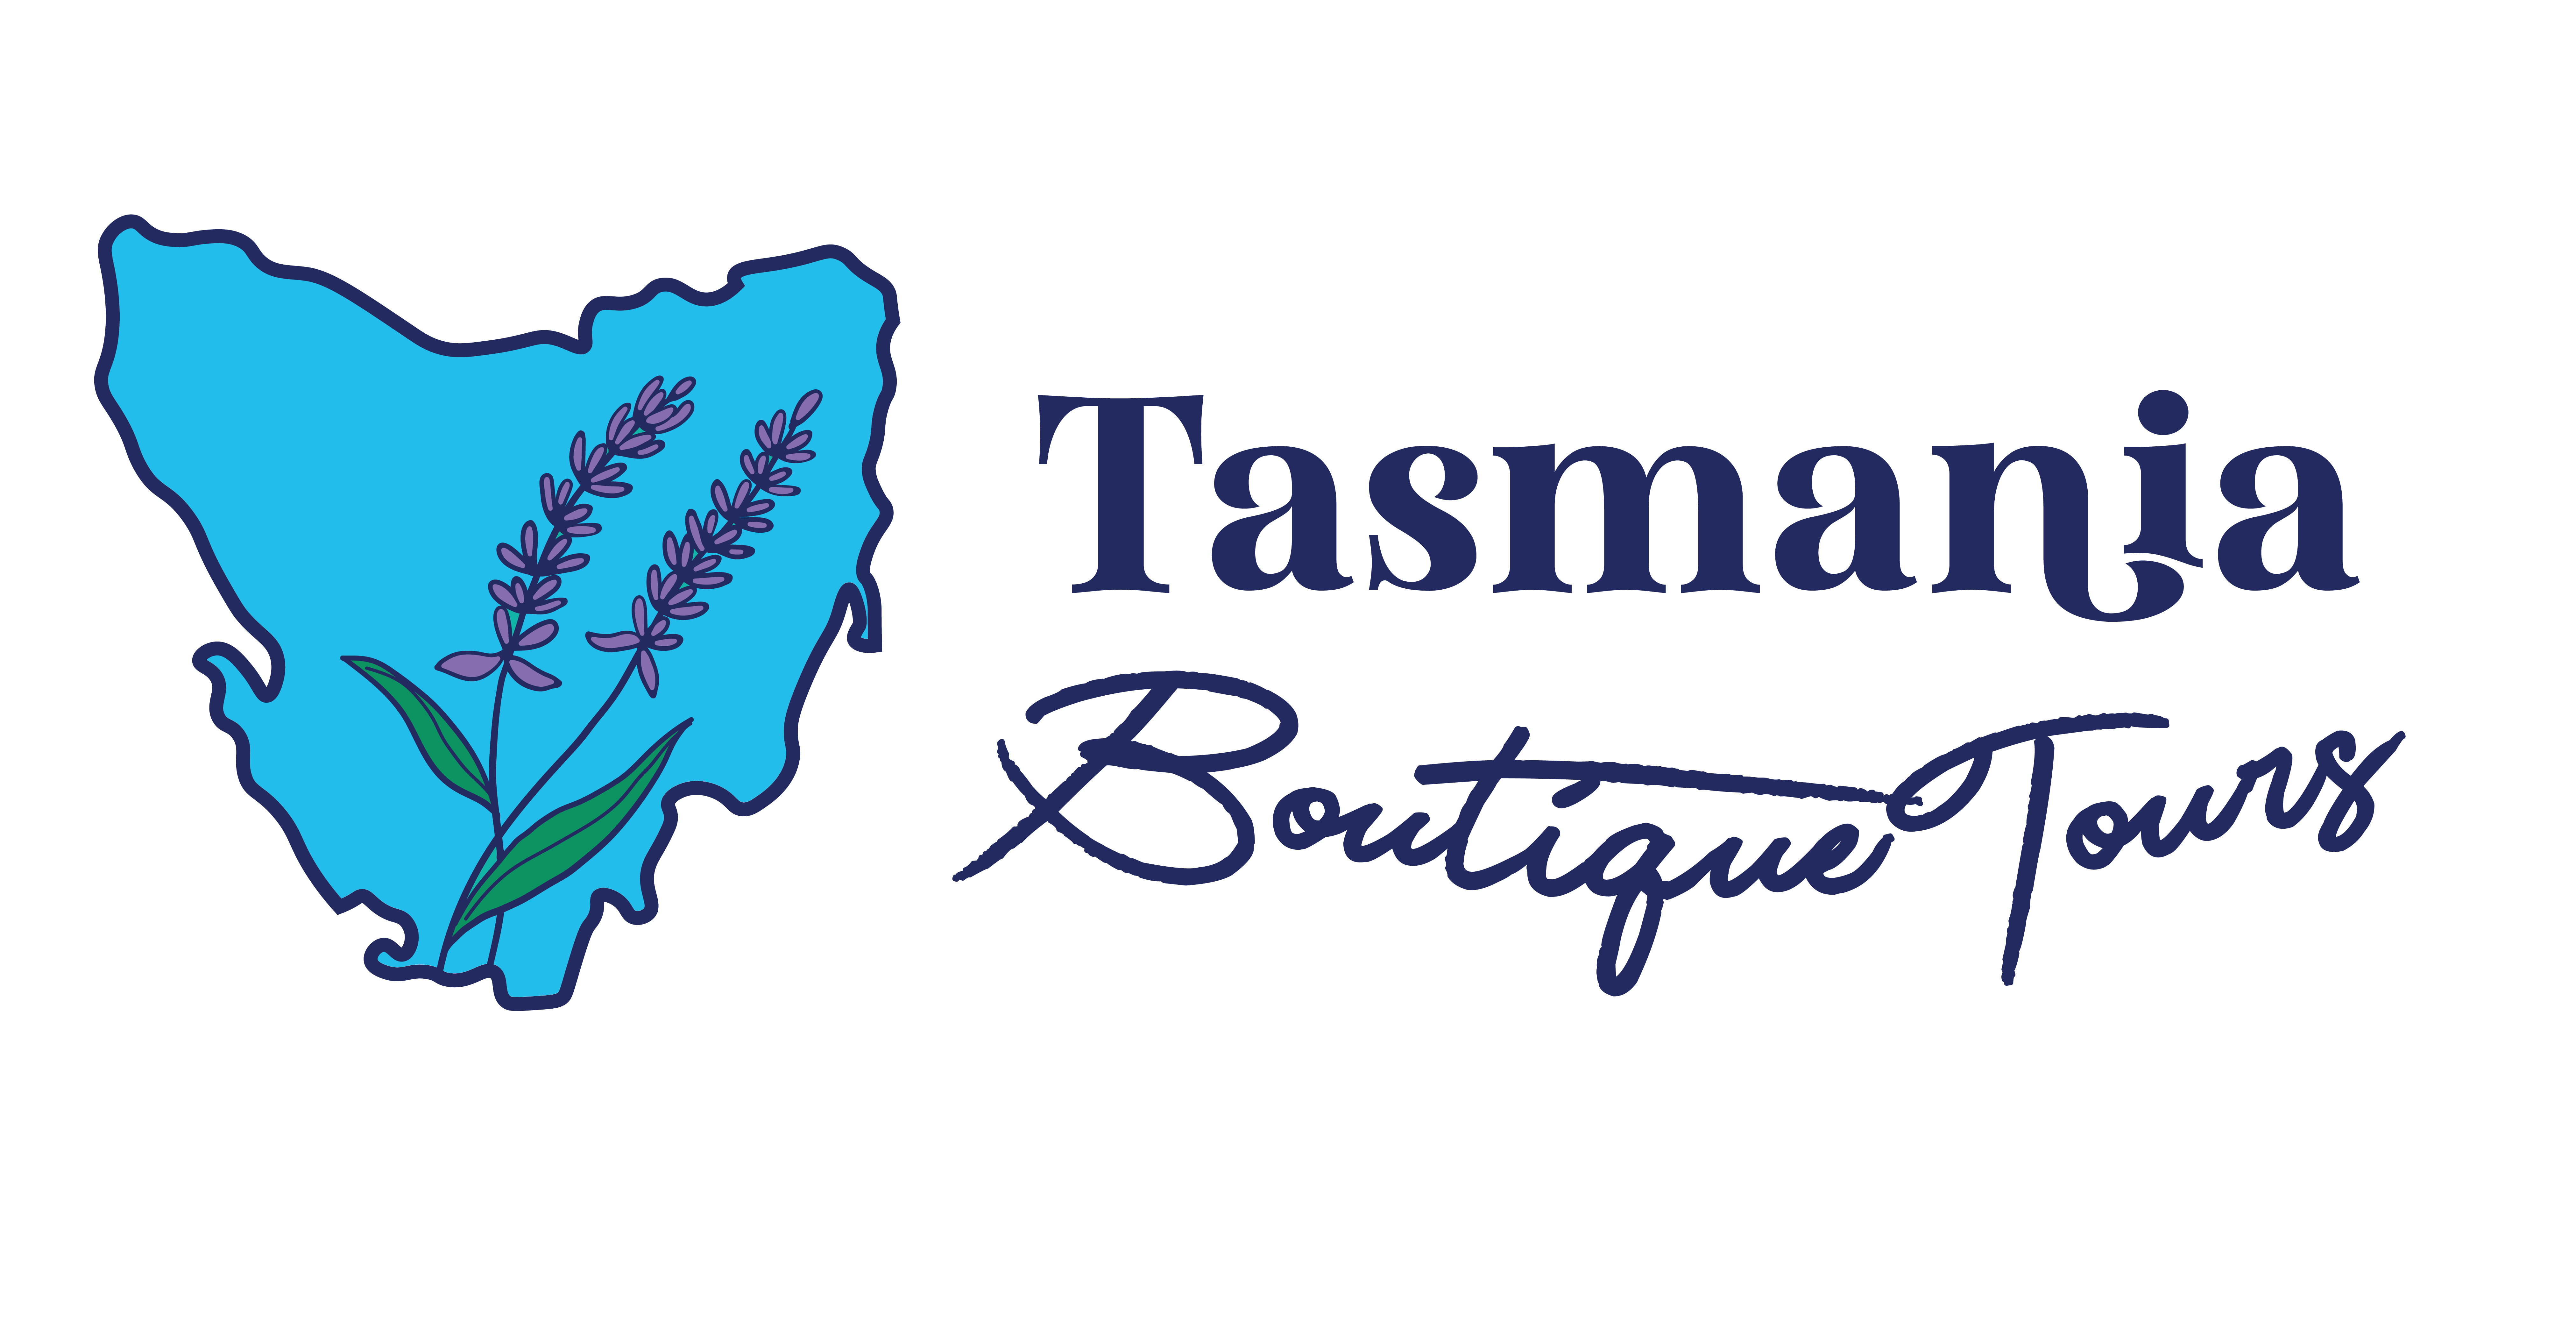 tasmania boutique tours